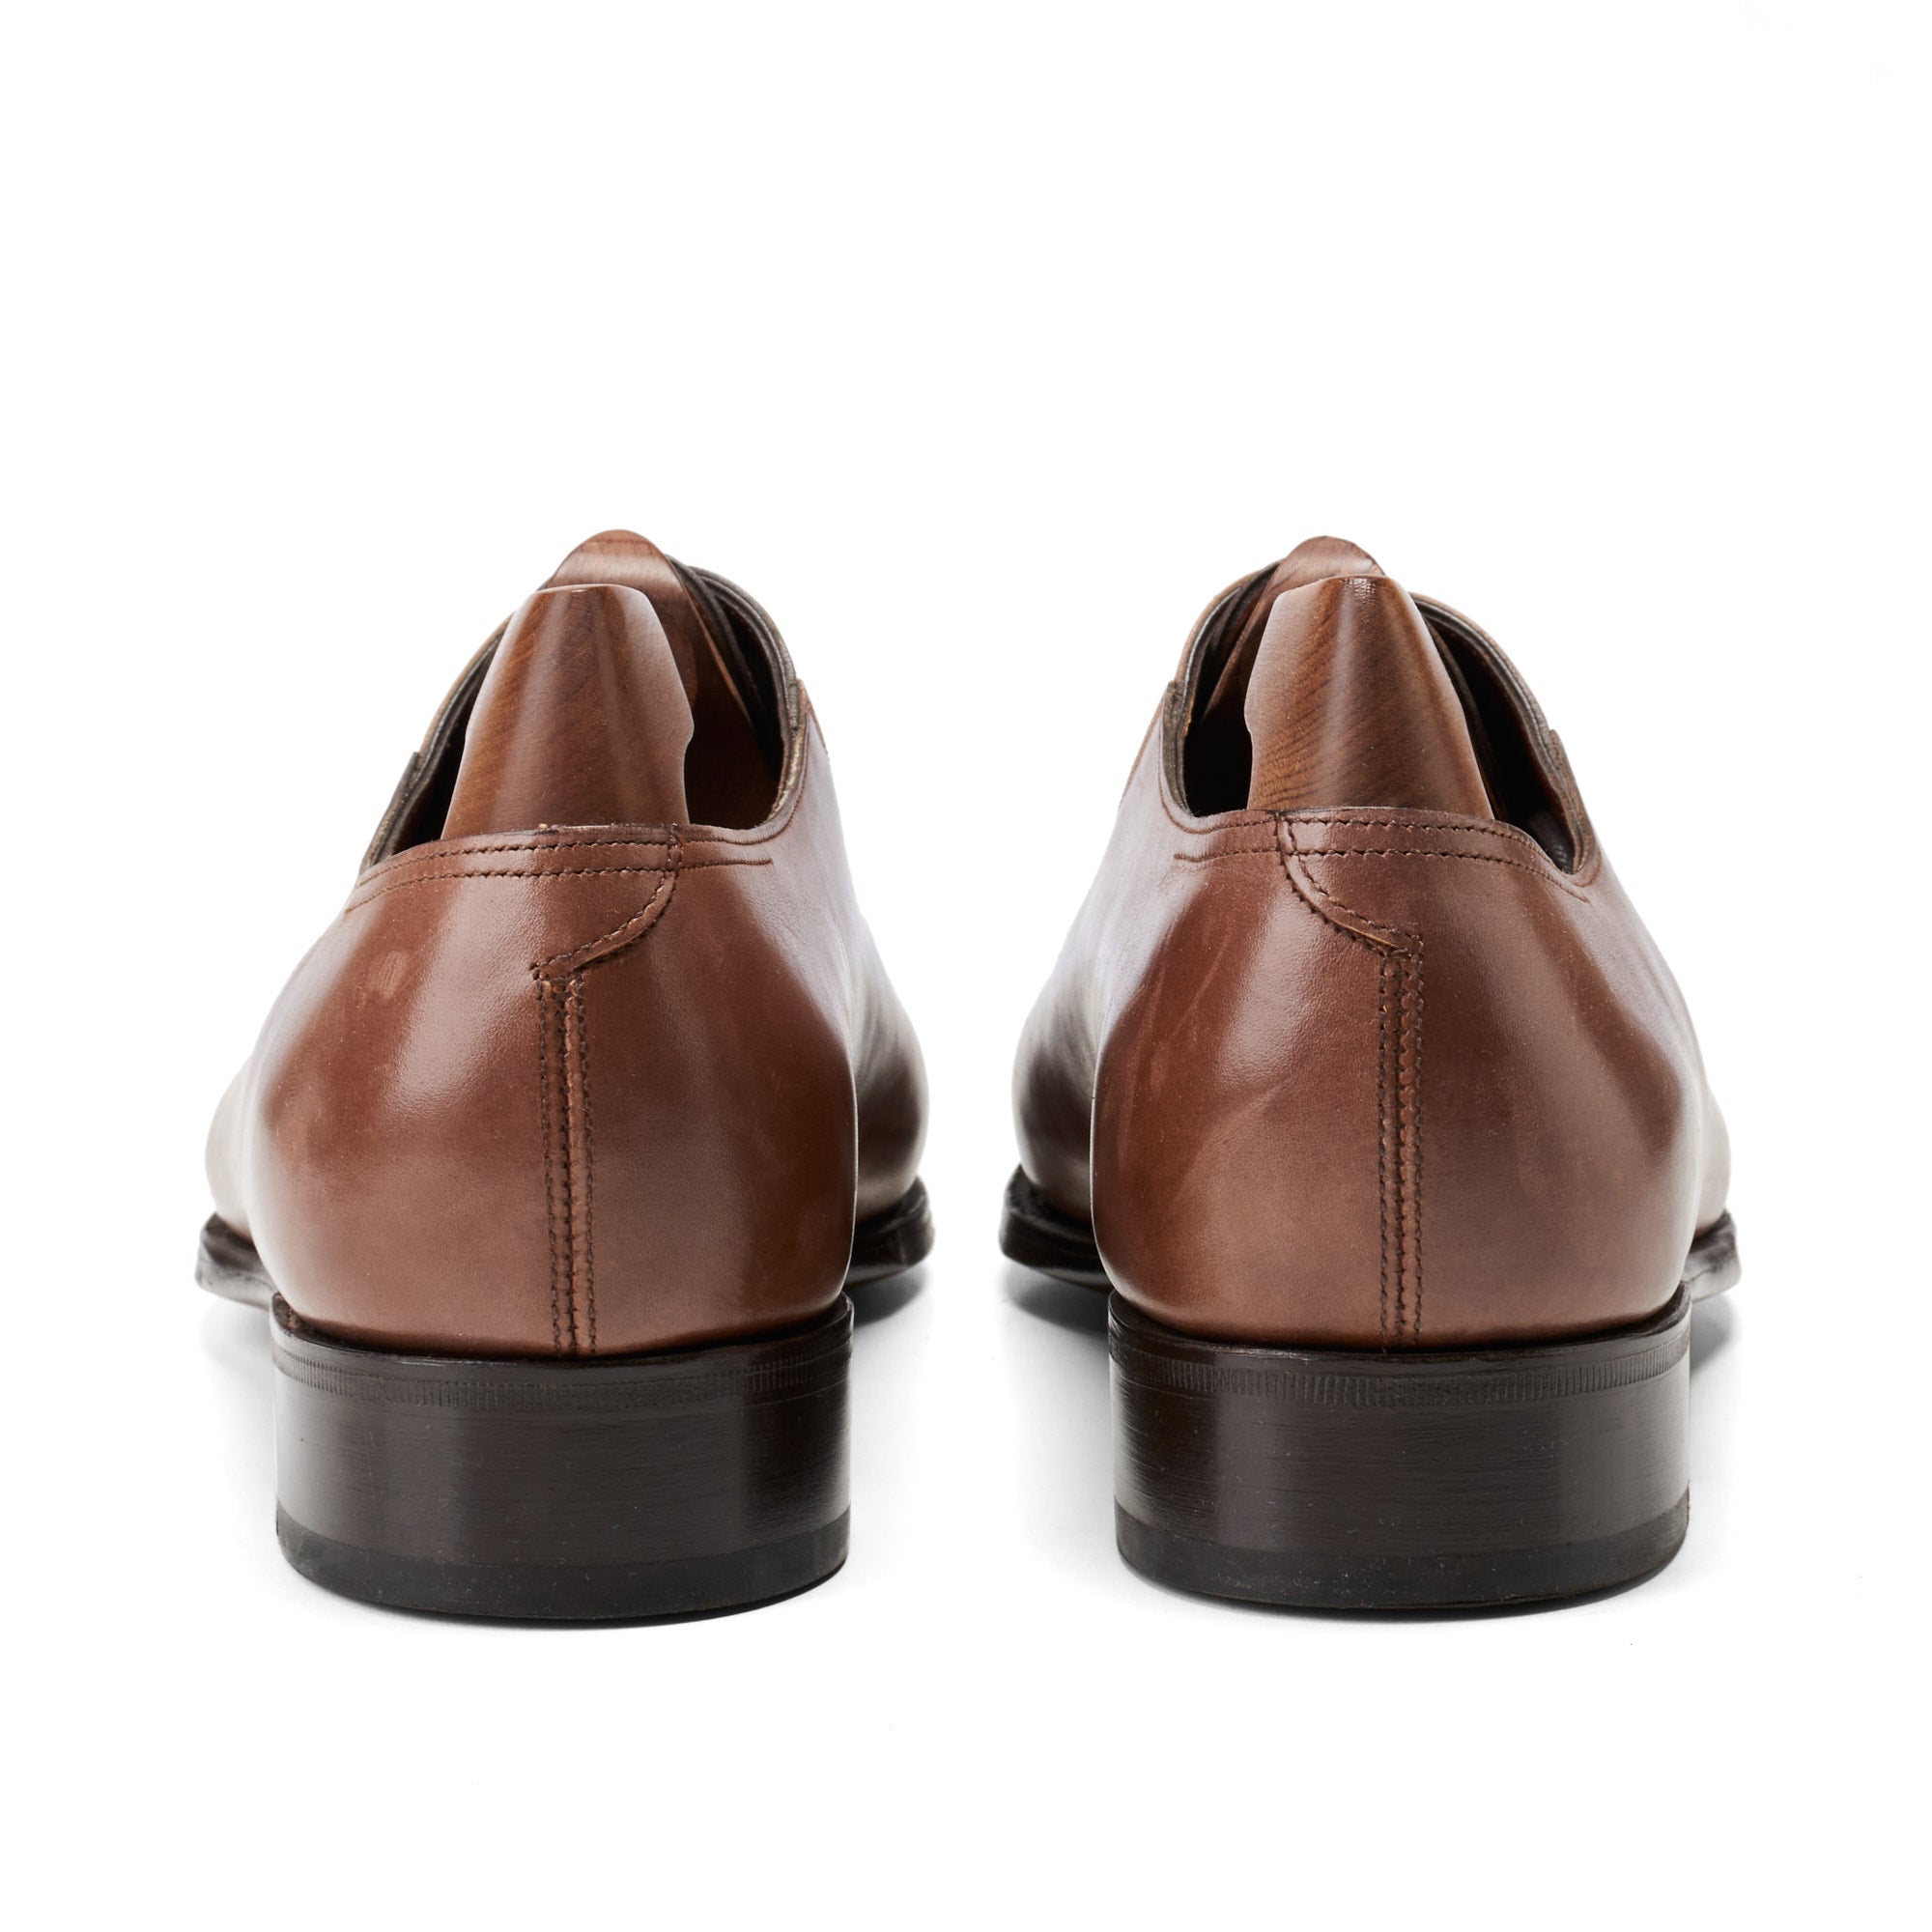 JOHN LOBB "ST CRÉPIN 2014" Limited Ed. Oxford Shoes UK 7.5E US 8.5 Last 7000 JOHN LOBB